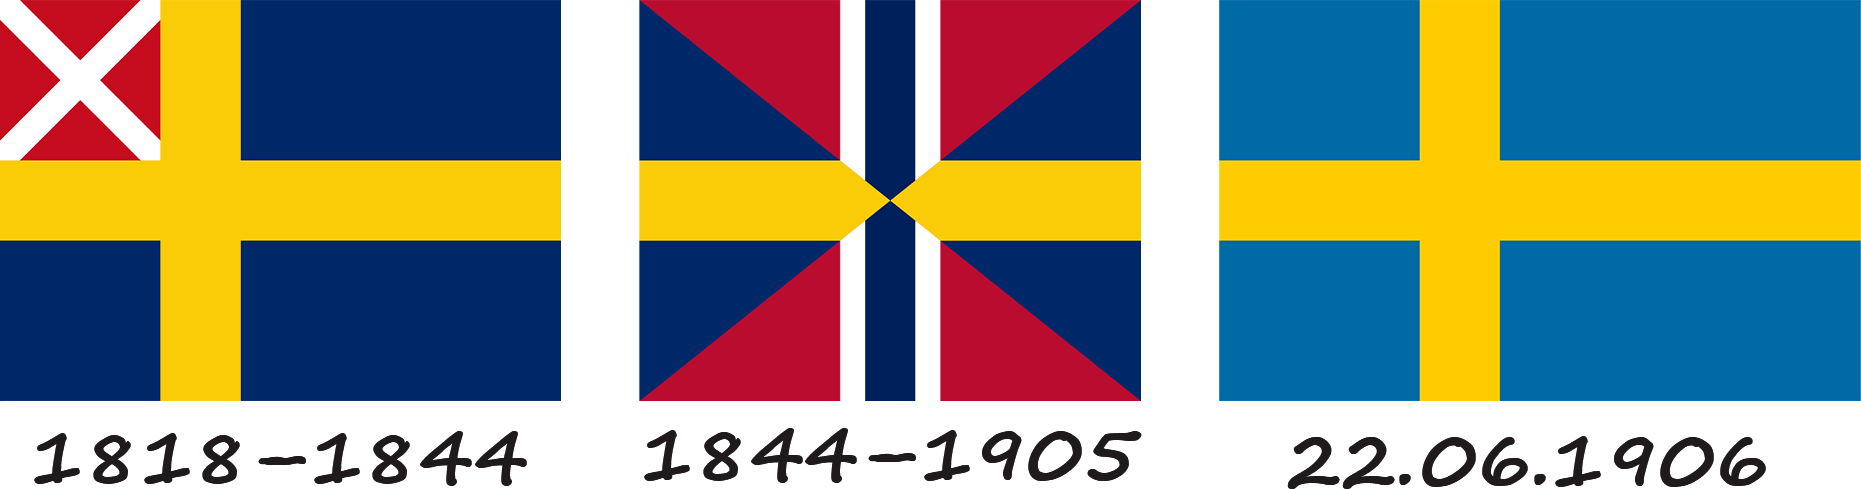 Історія прапору Швеції